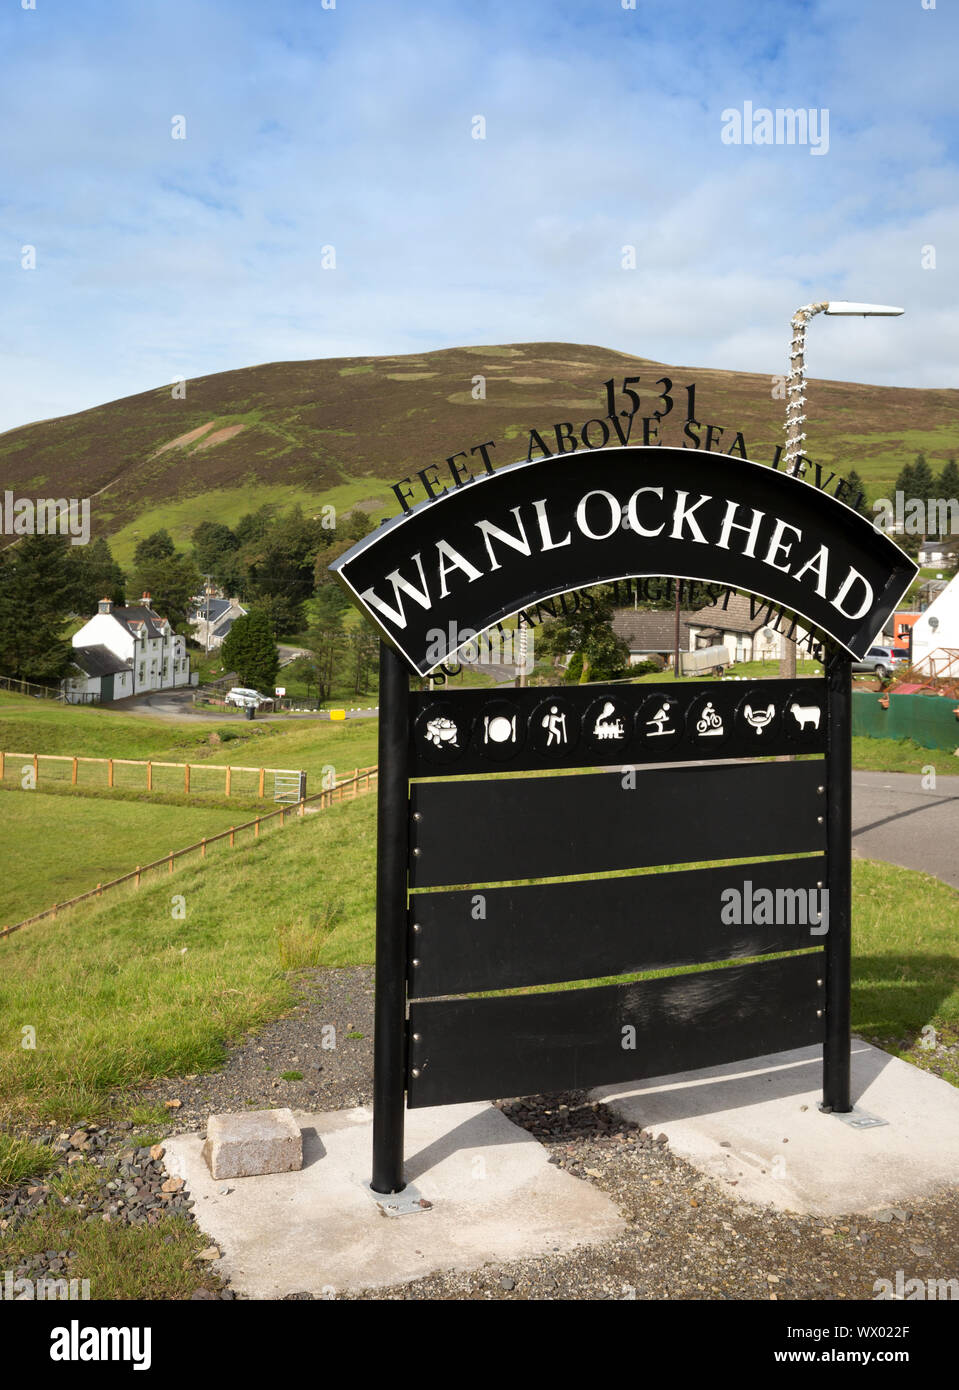 Wanlockhead le plus haut village de l'Écosse et le Royaume-Uni à 1531 pieds au-dessus du niveau de la mer Banque D'Images